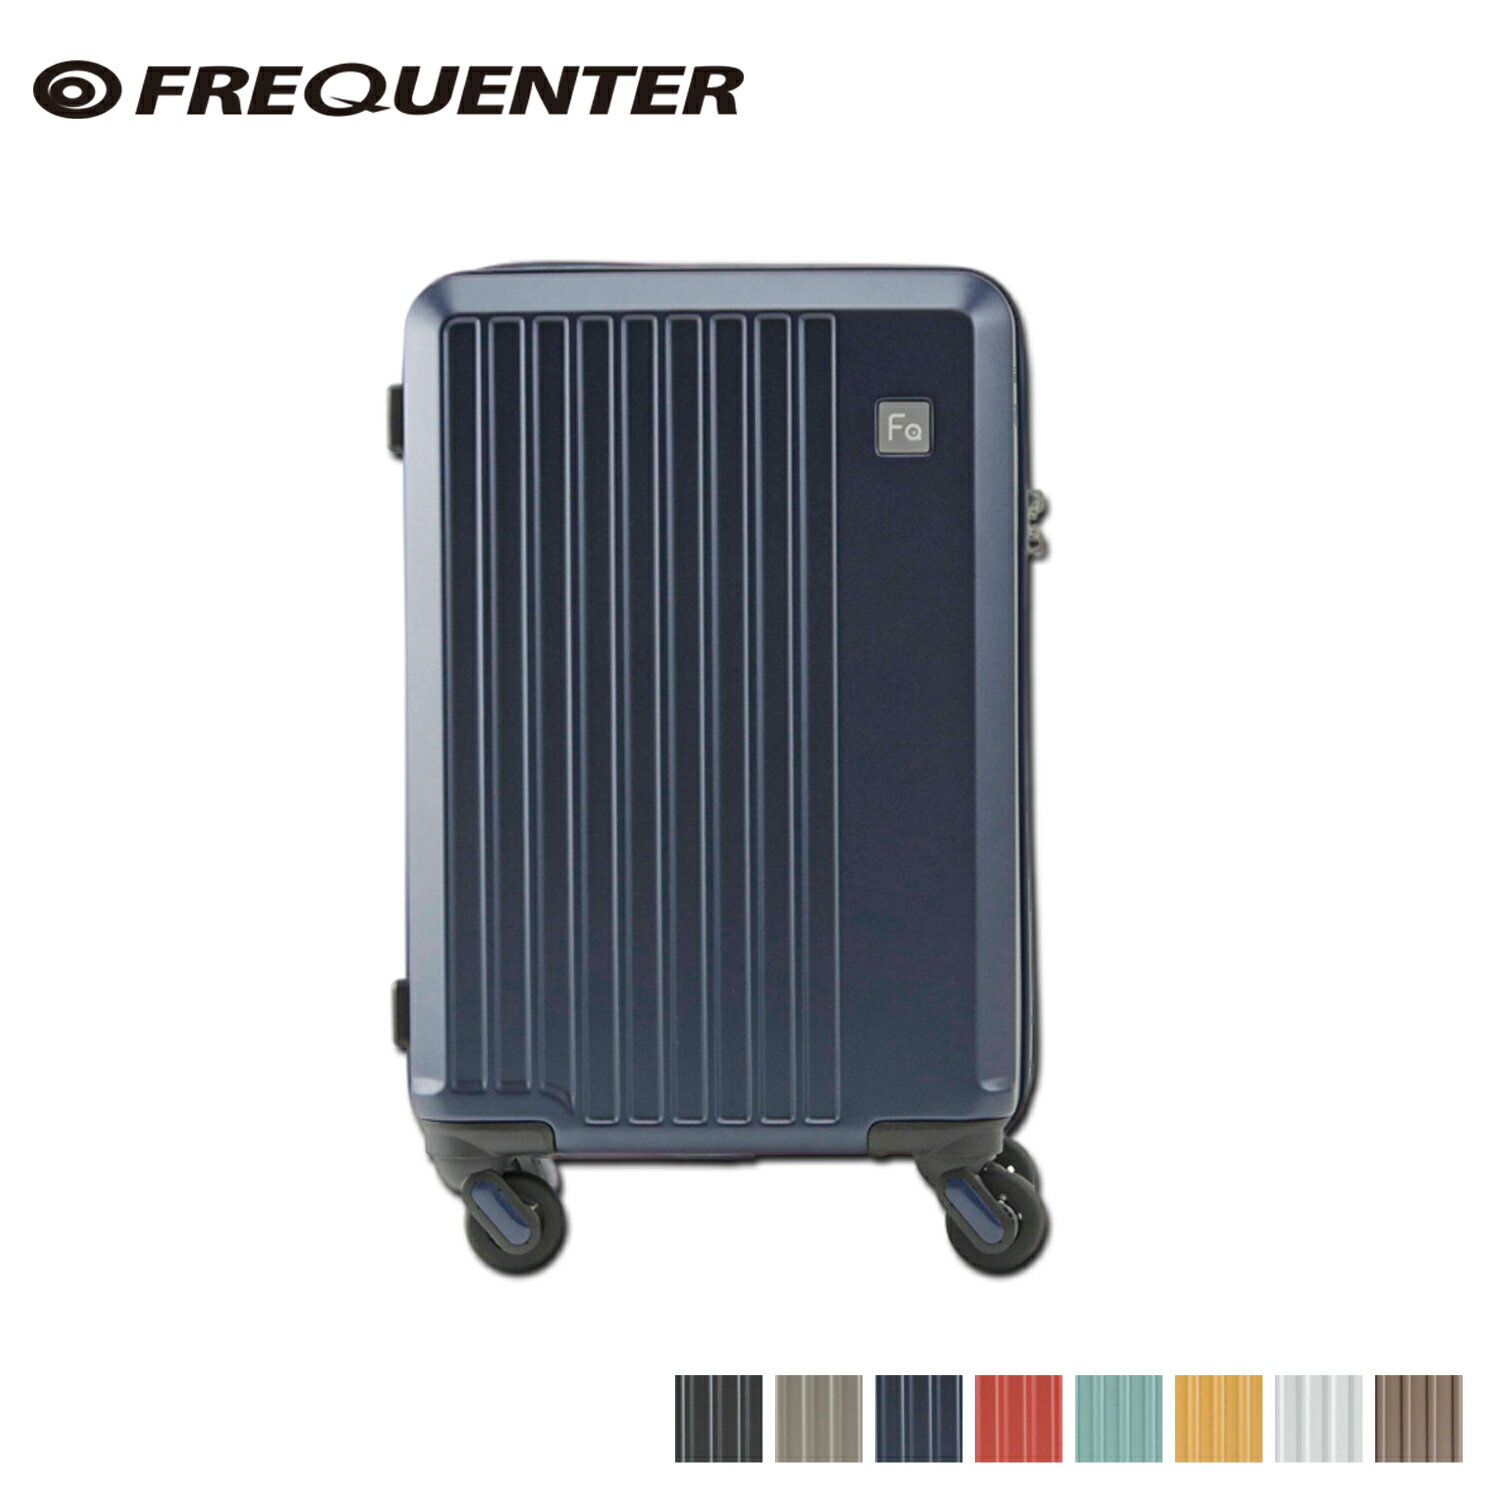 フリクエンター FREQUENTER スーツケース キャリーケース キャリーバッグ リエーヴェ メンズ レディース 約33L 機内持ち込み 4輪 LIEVE ダーク グレー グレージュ ネイビー レッド 1-250